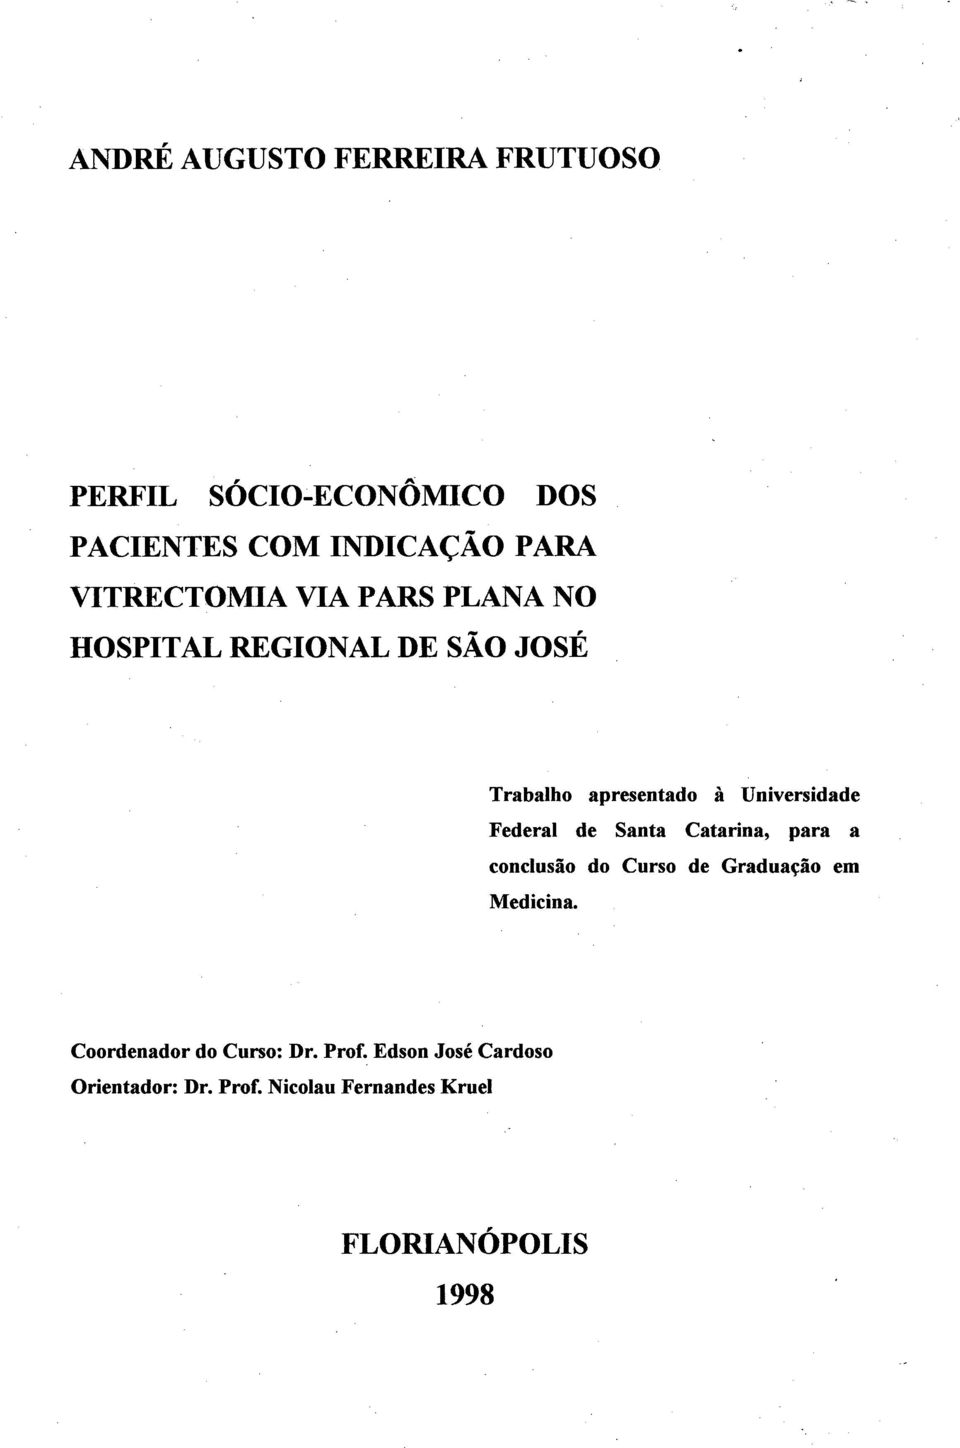 Federal d e Santa Catarina, para a conclusão do Curso de Graduação em Medicina.